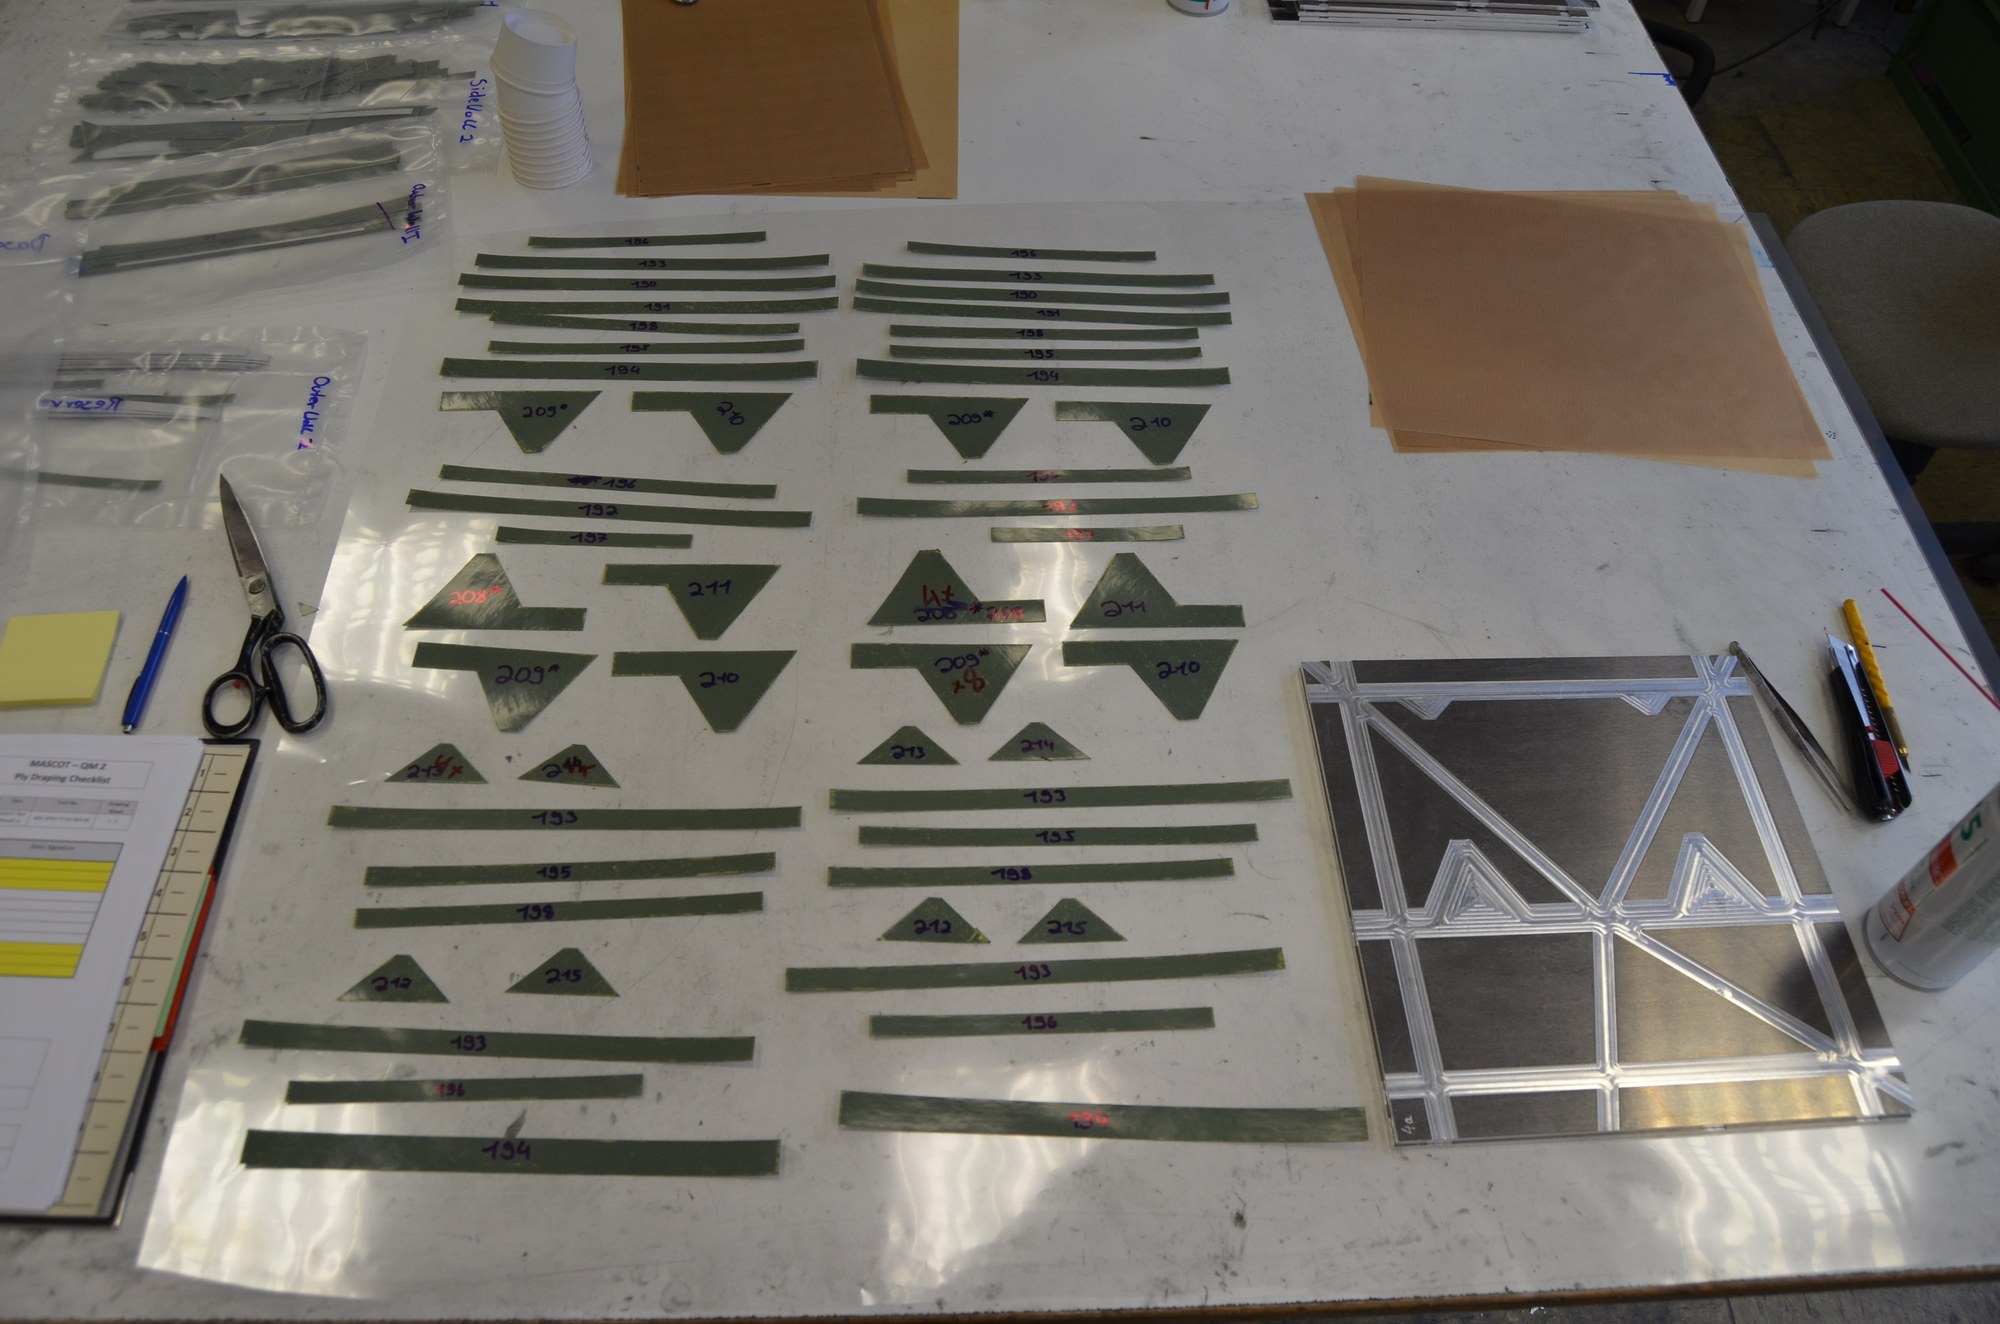 Abbildung 4: Maschinell zugeschnittene Halbzeugteile aus CFK-Faserverbundkunststoff (Prepreg) zur Herstellung der Deckschichten für eine der Seitenwände des MASCOT-Landers